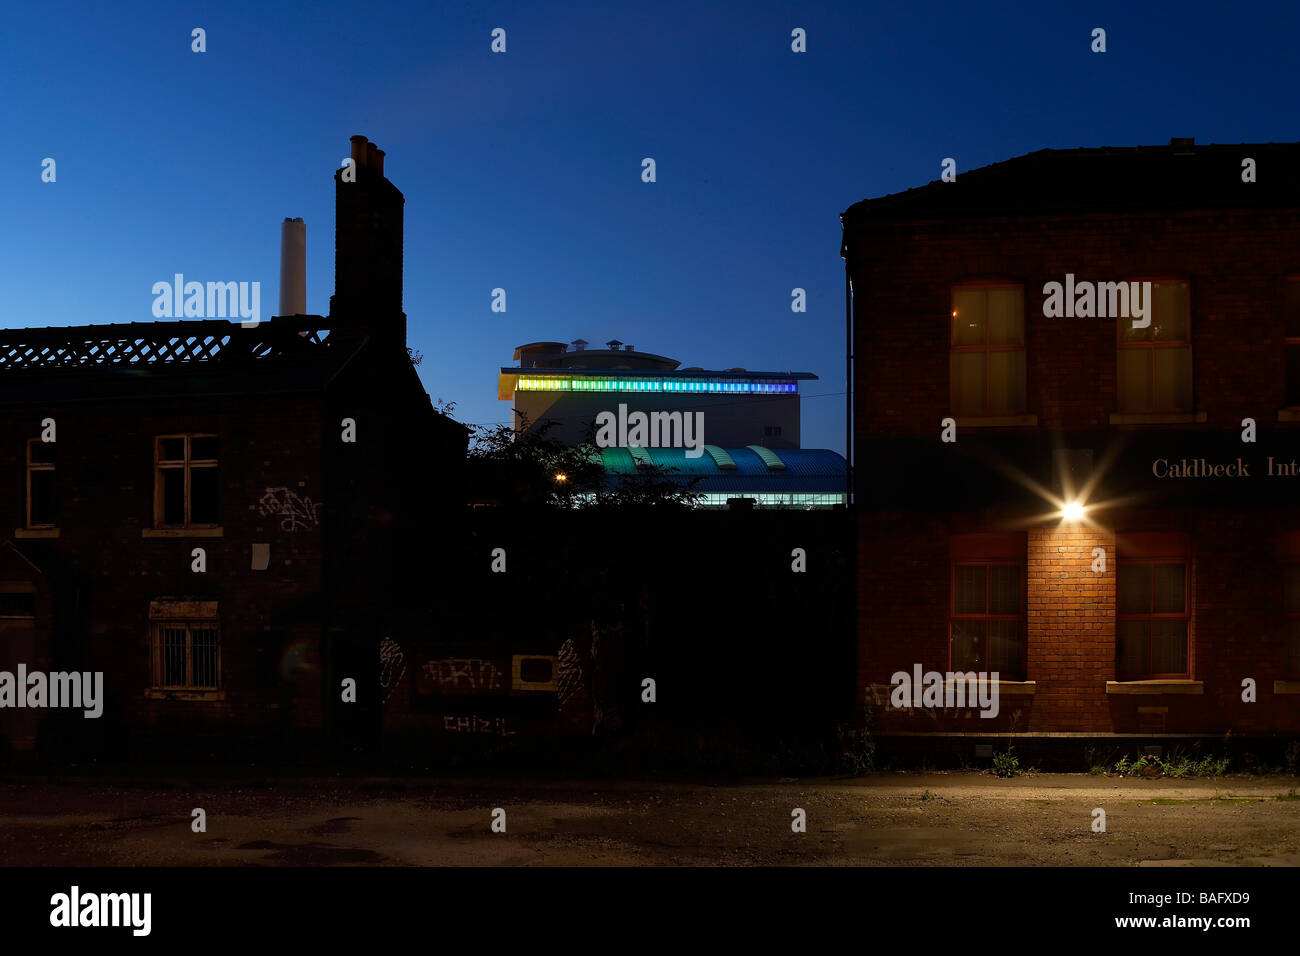 Onyx-Fabrik, Sheffield, Vereinigtes Königreich, Claire Brew, Onyx Fabrik Außenbereich Zwielicht durch bestehende Gebäude. Stockfoto